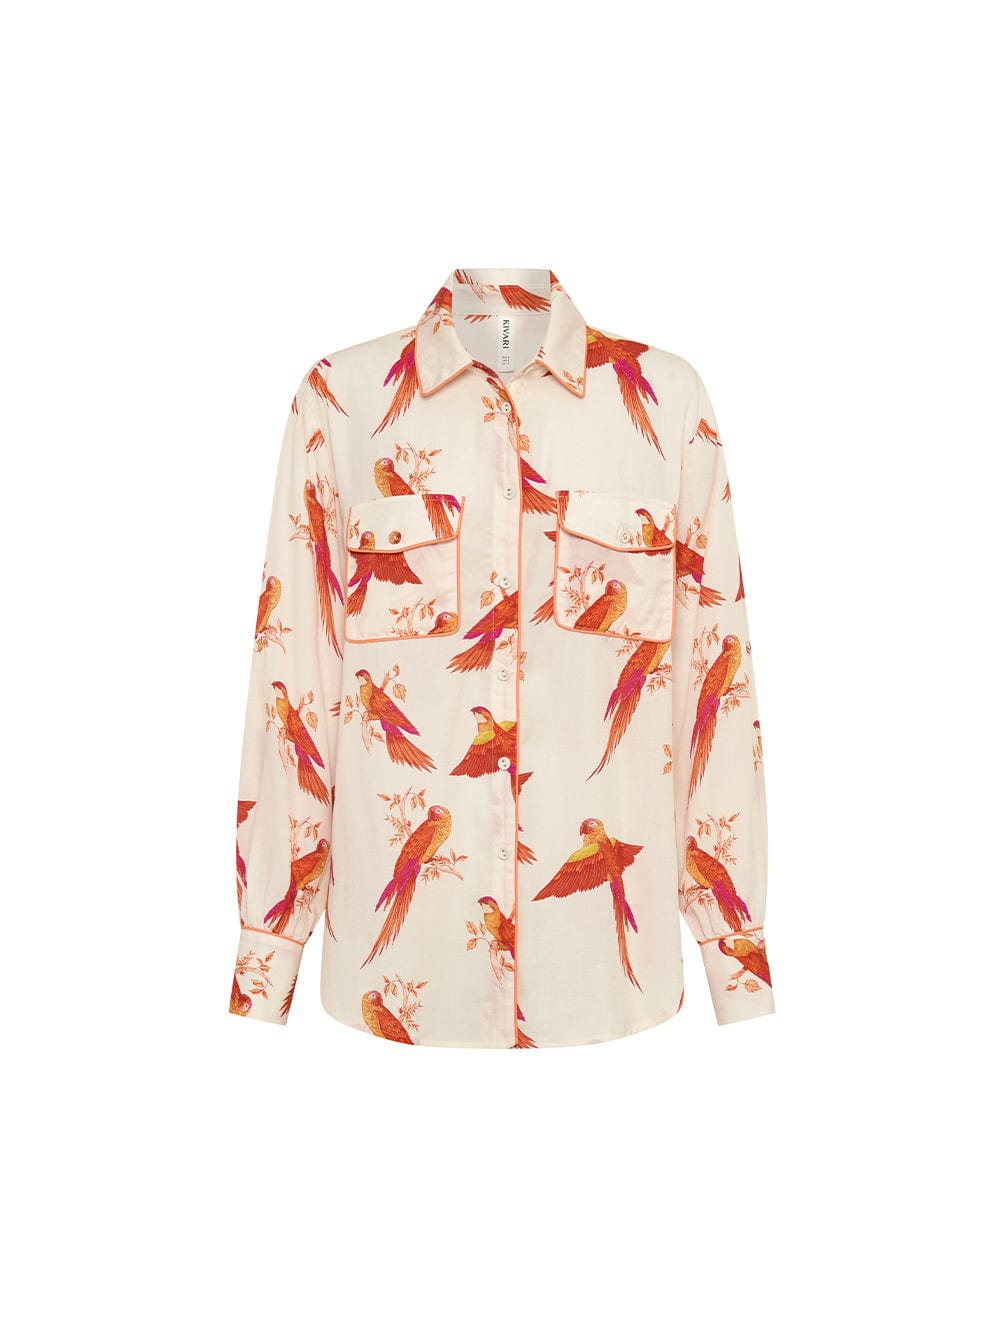 Kaylee Shirt KIVARI | Pink and orange bird printed shirt